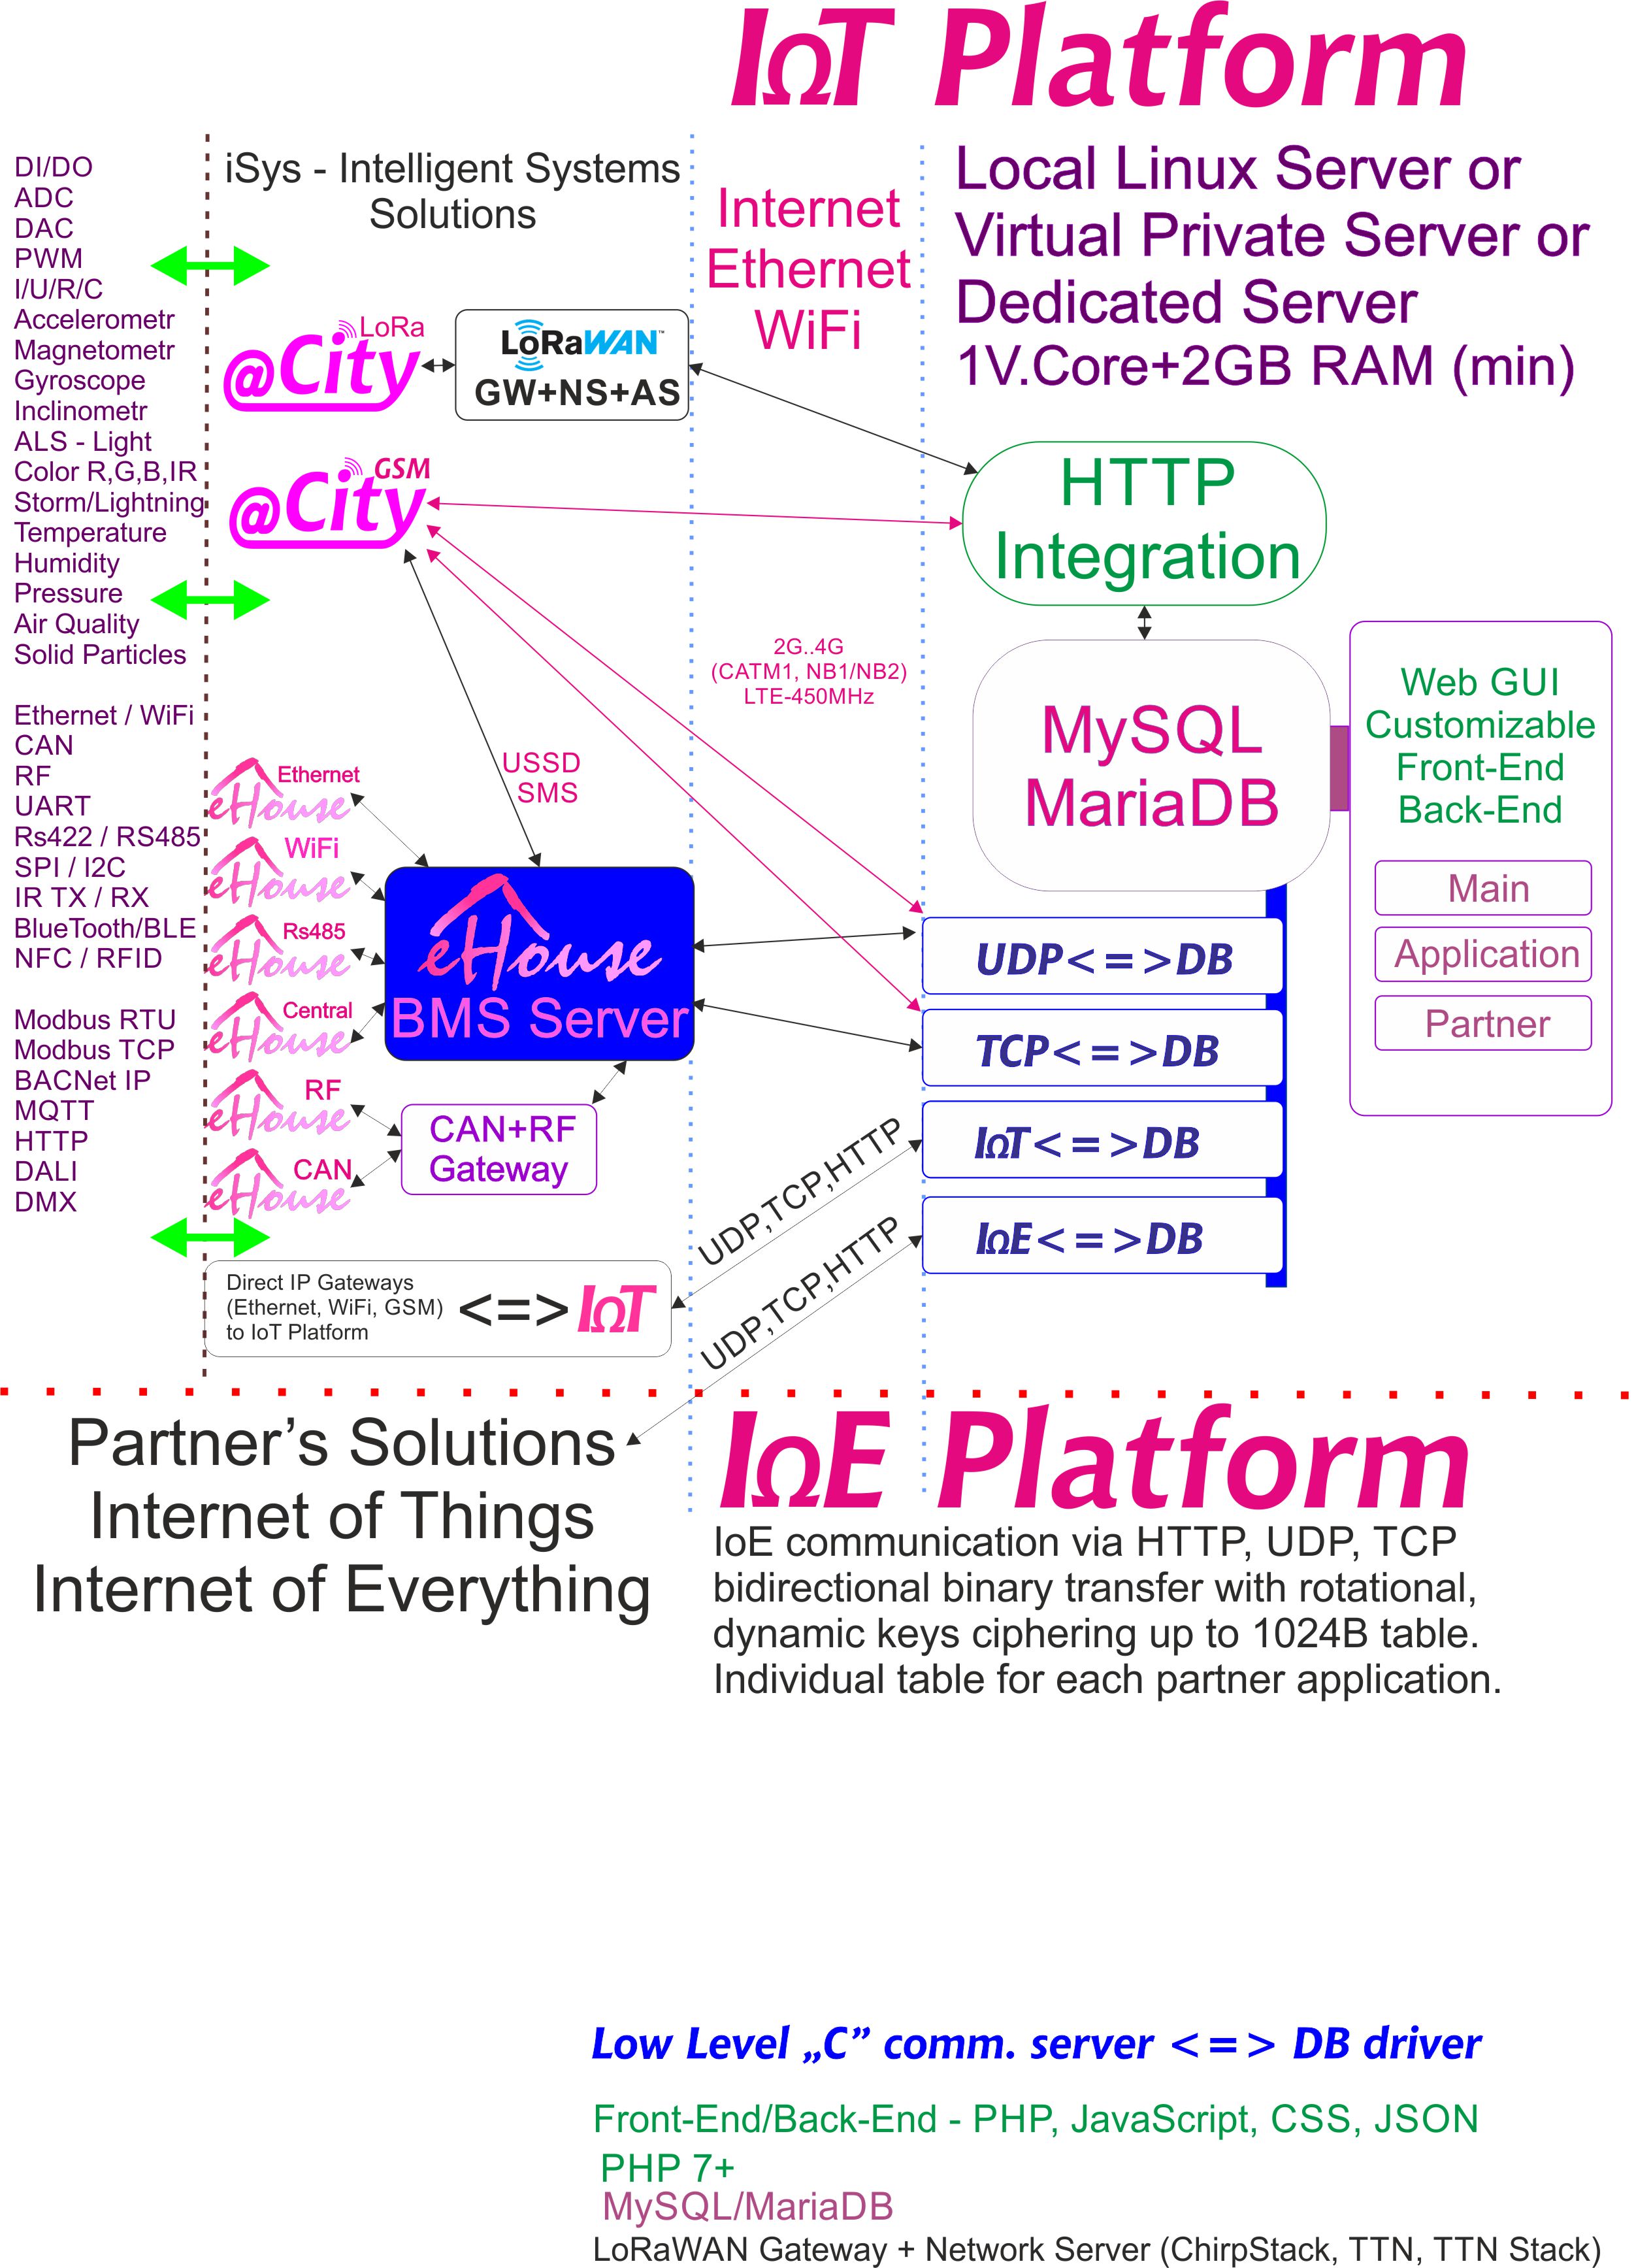 IoE ، IoT Platform اختصاص داده شده برای هر شریک با رمزگذاری جداگانه